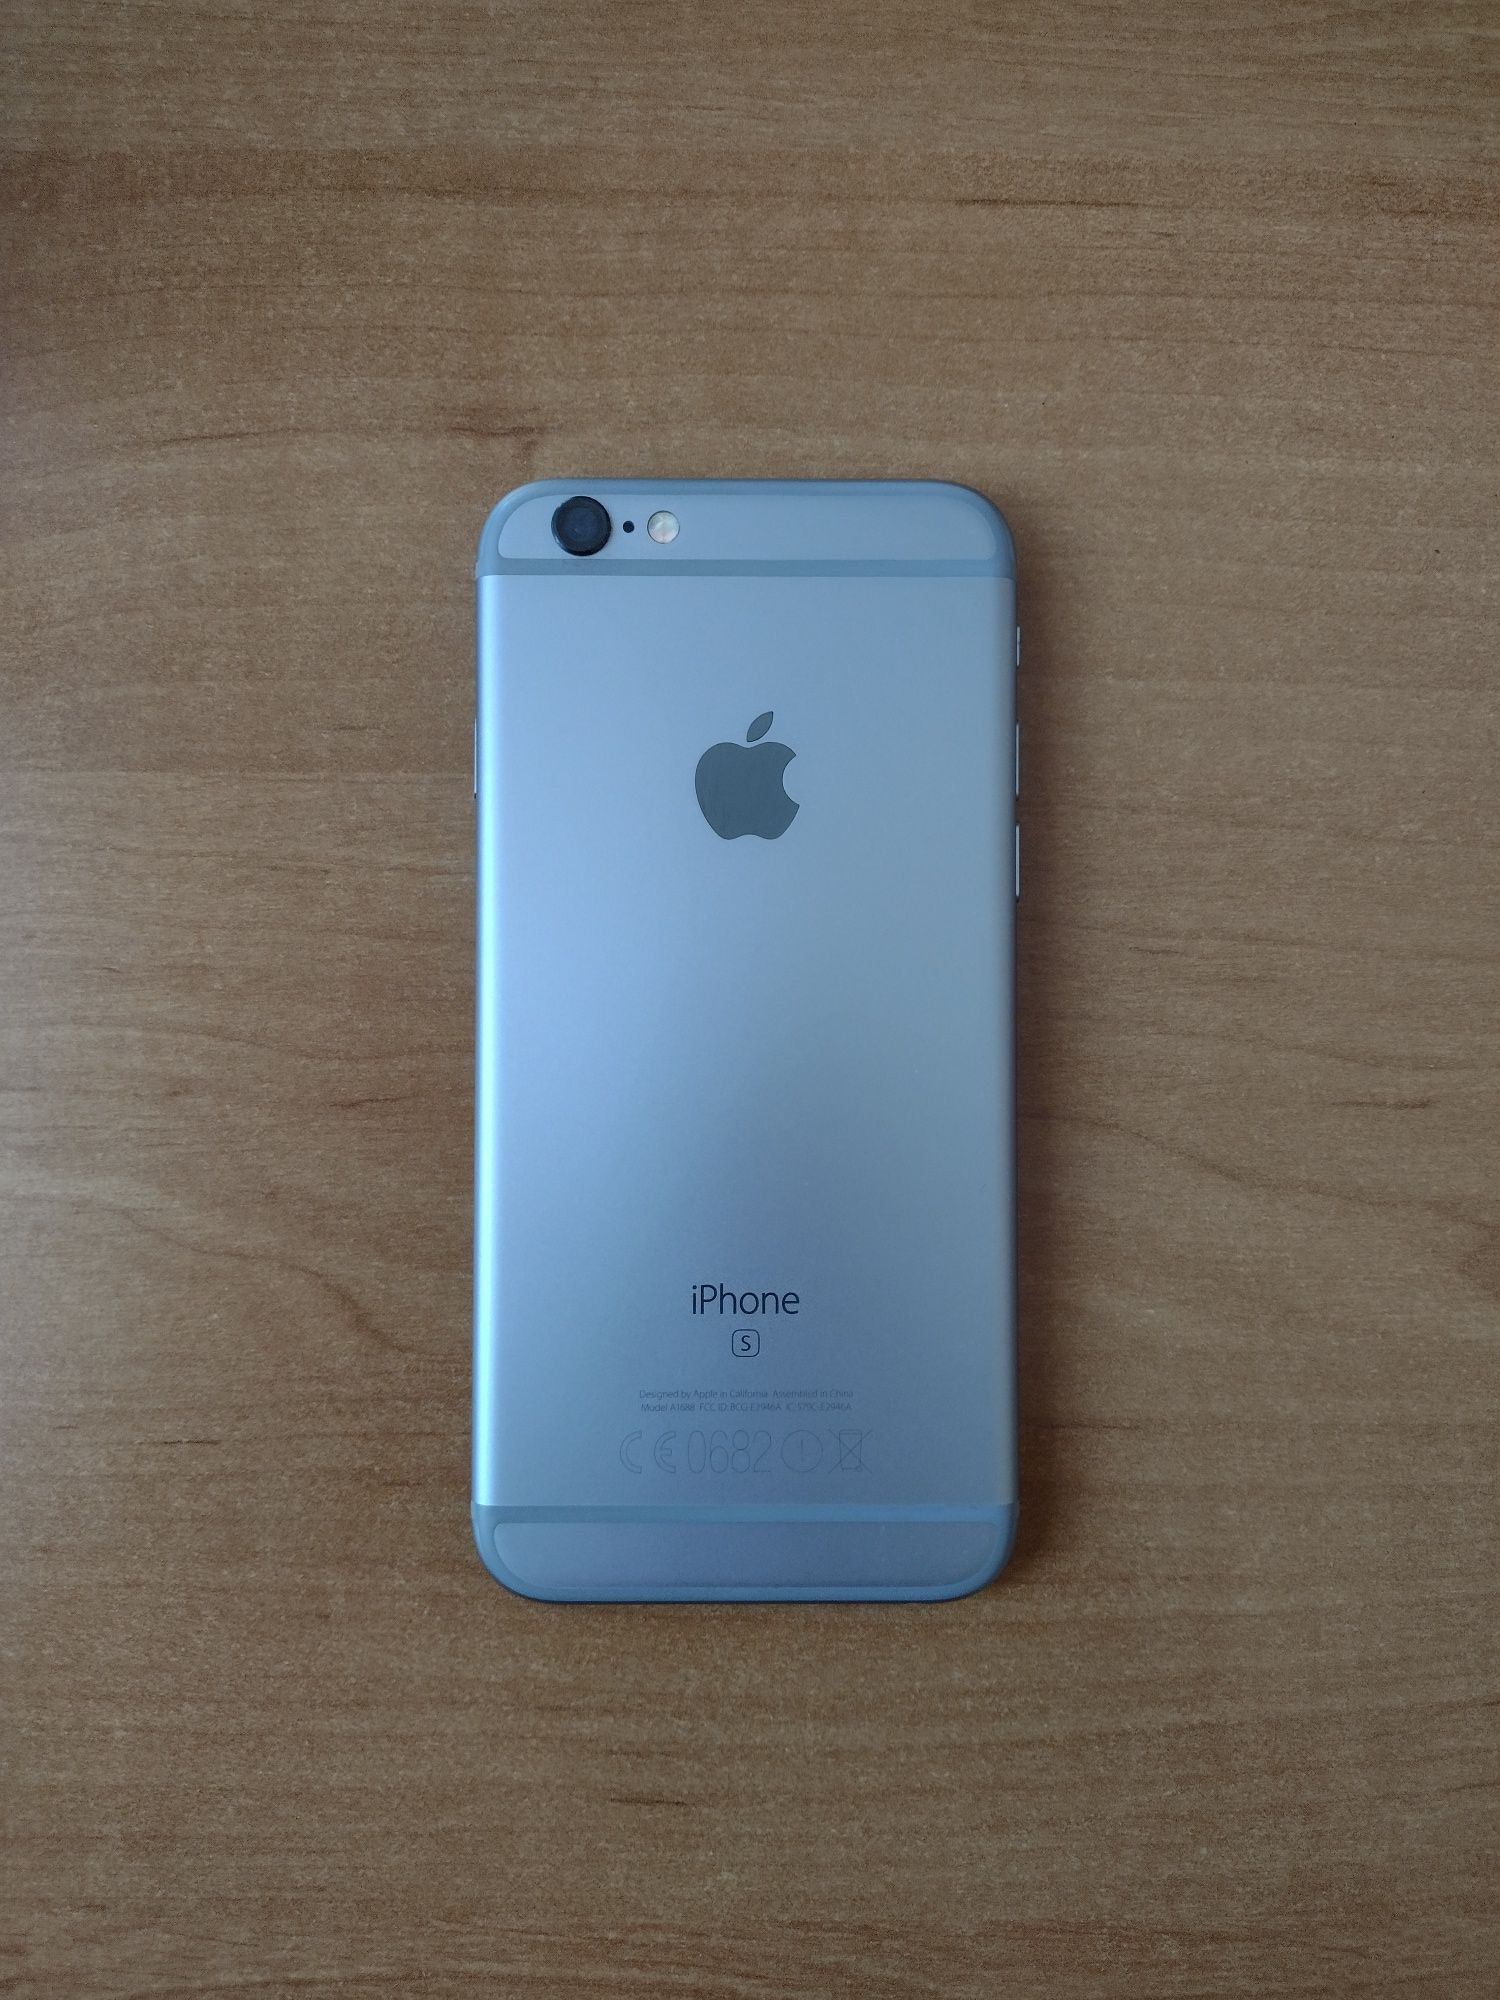 iPhone 6s 32GB nowa bateria + etui ładujące